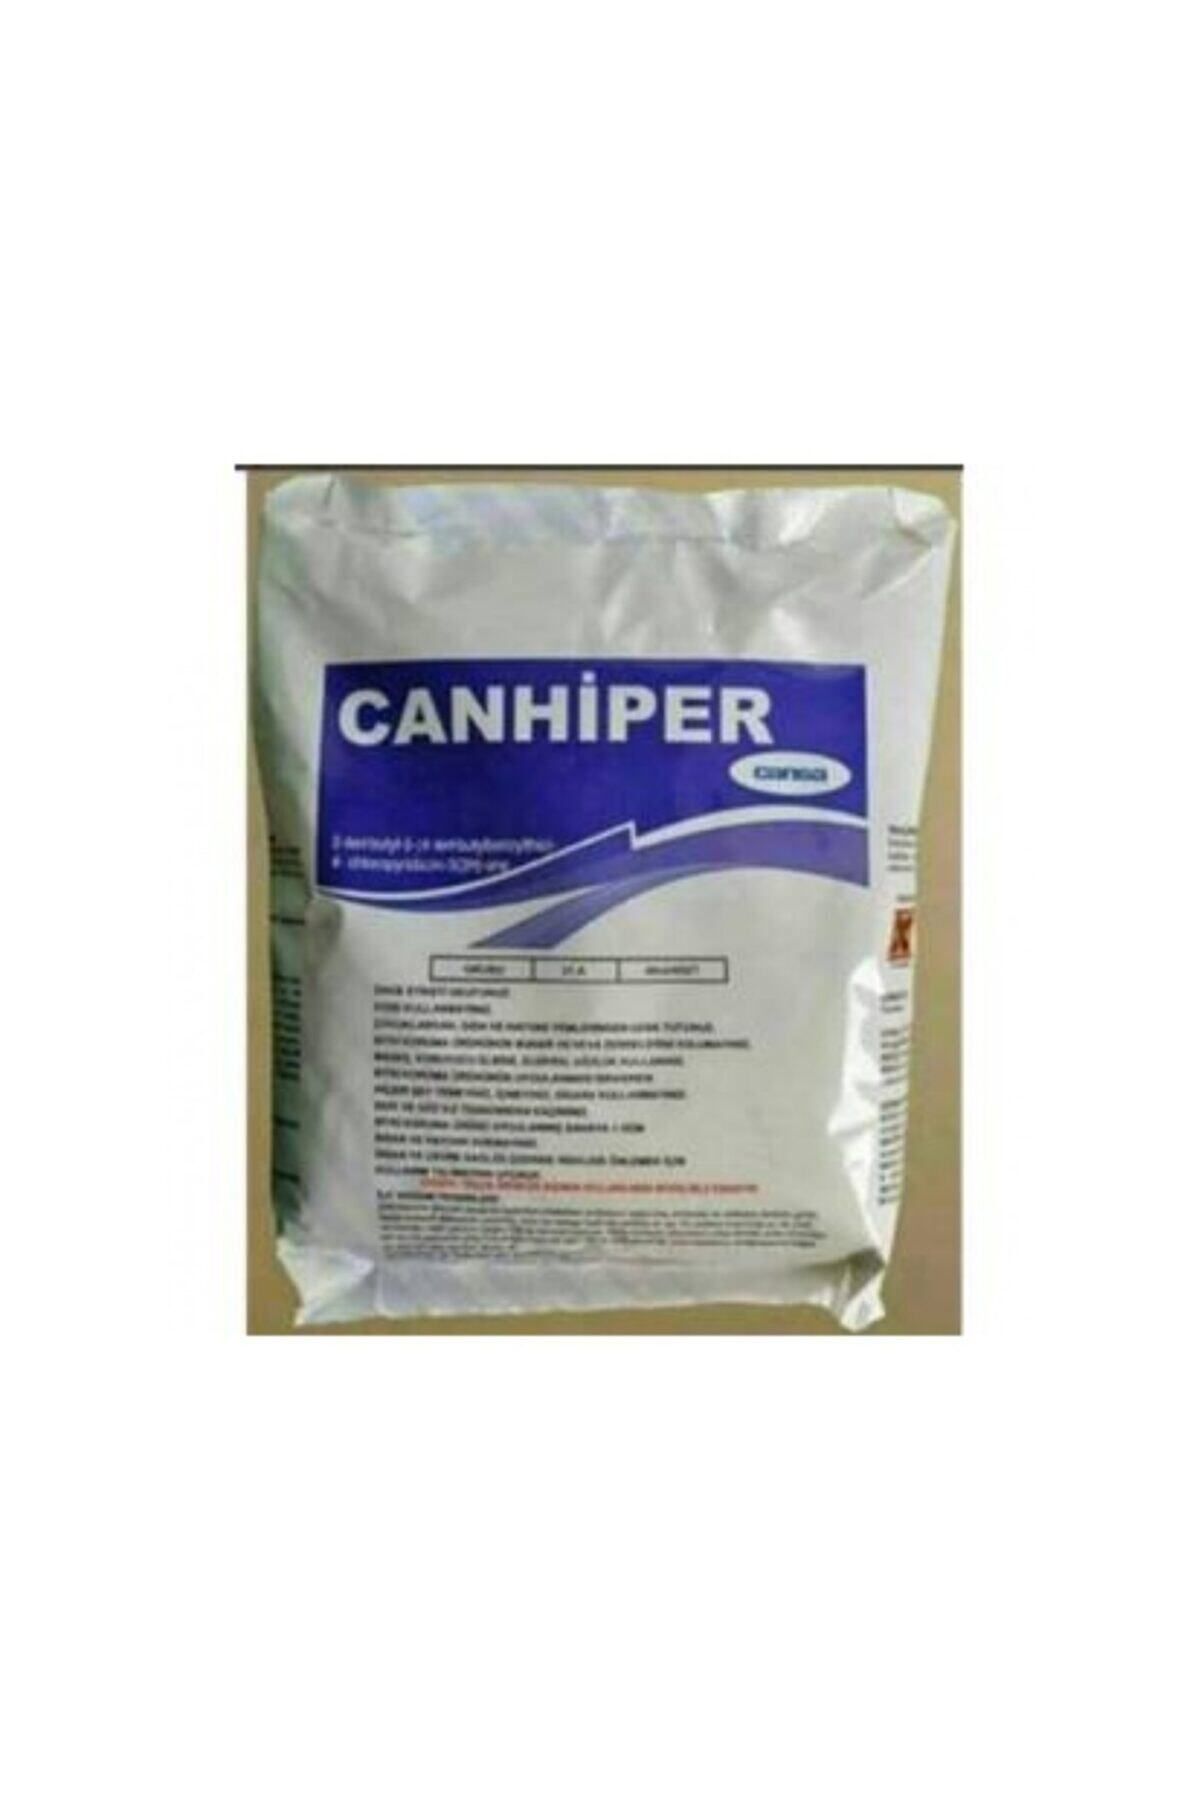 CANARY Canhiper Bit Ilacı 500 gr